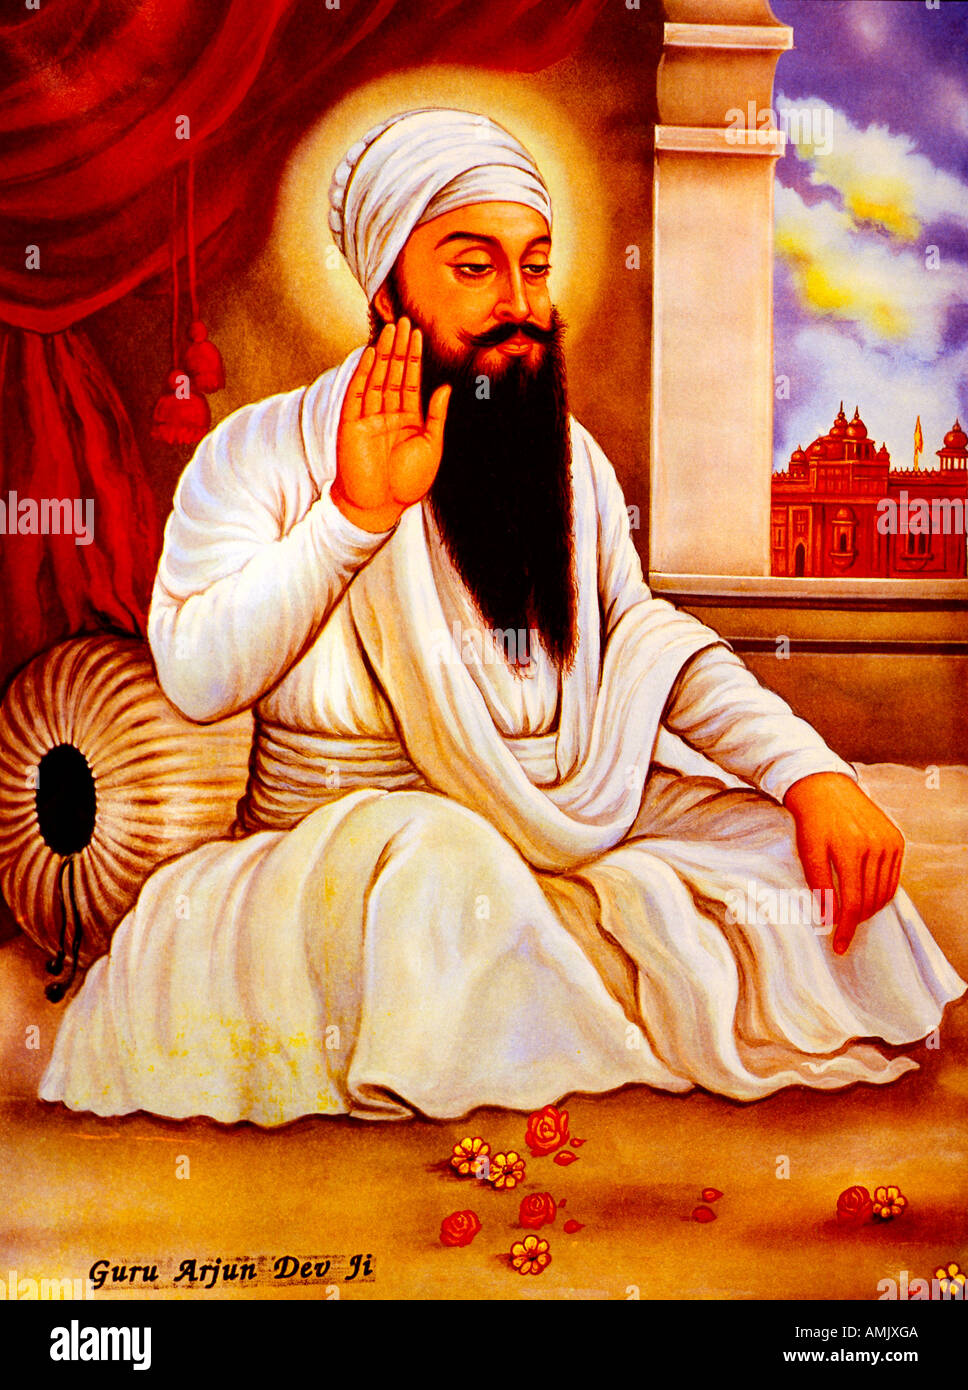 Guru Arjun Dev Ji 5th Sikh Guru Stock Photo